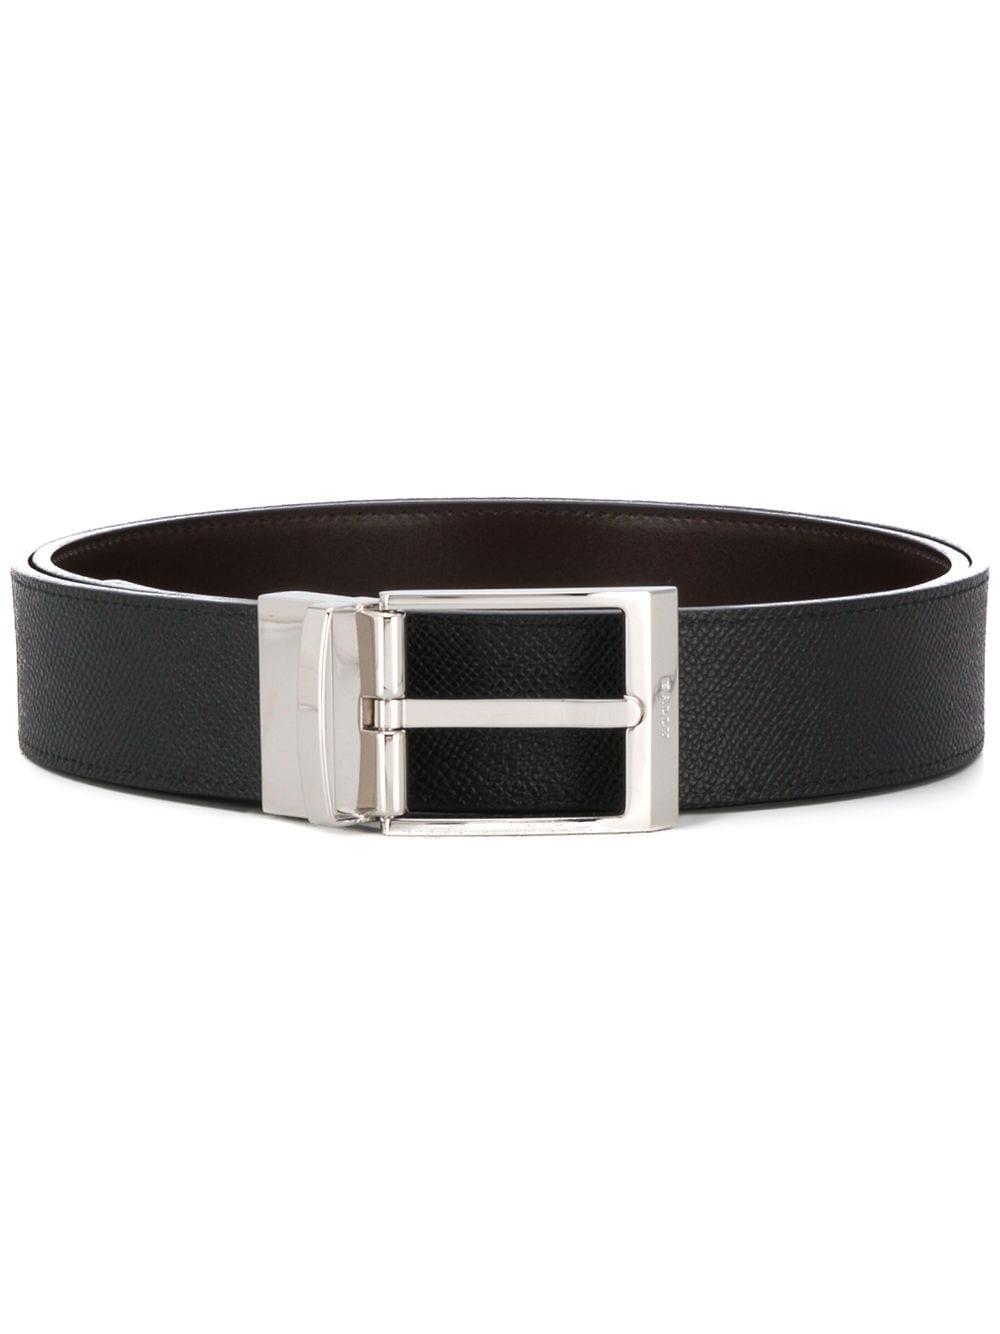 Bally Leather Interchangeable Buckle Belt in Black for Men - Lyst